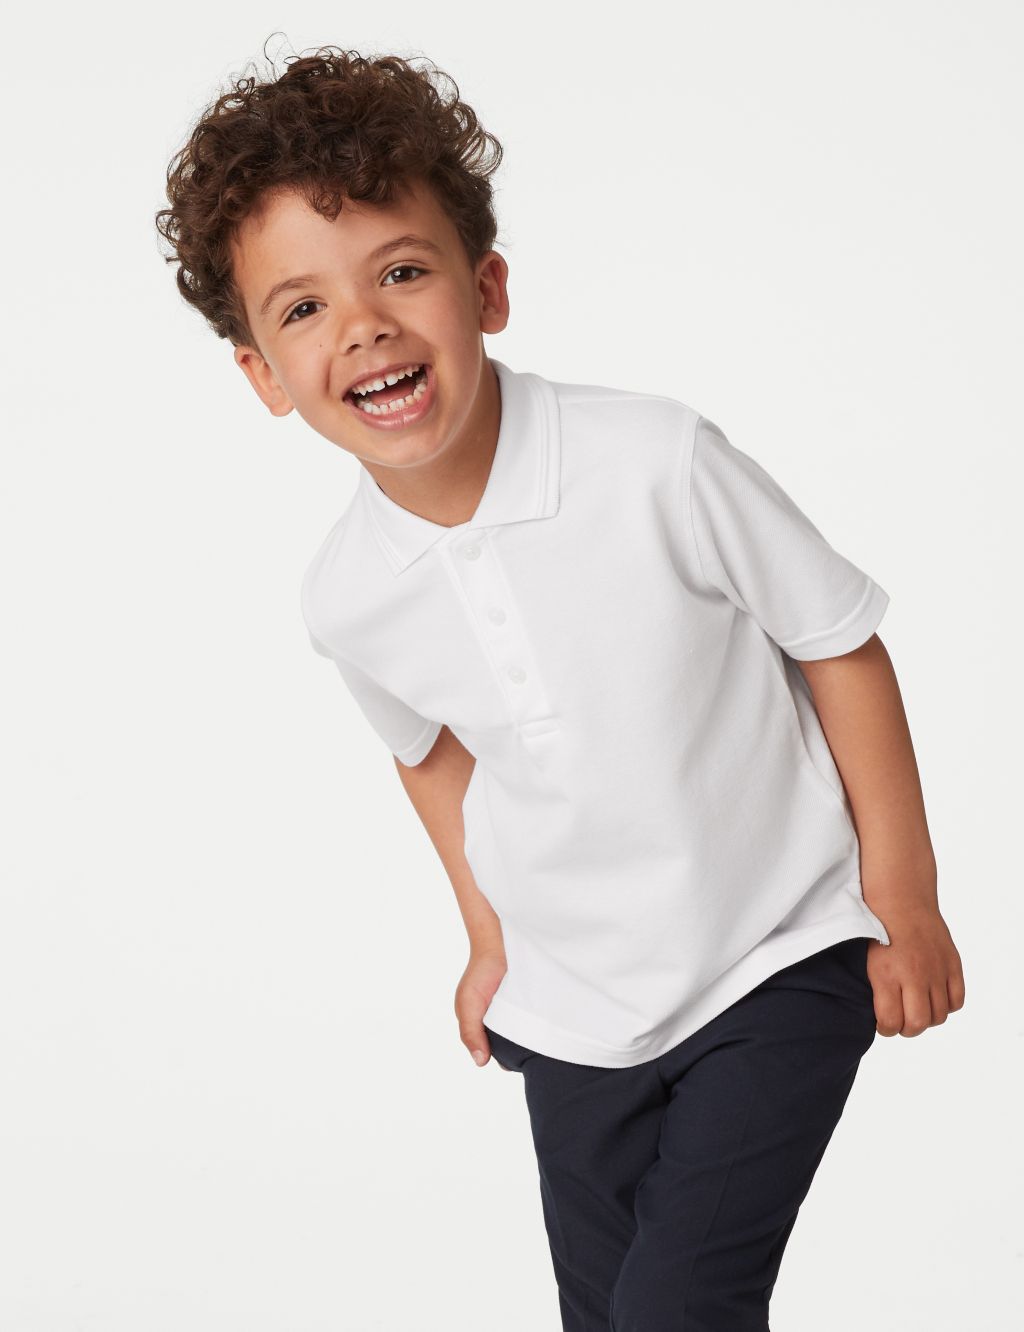 2pk Unisex Easy Dressing School Polo Shirts (3-18 Yrs) image 2